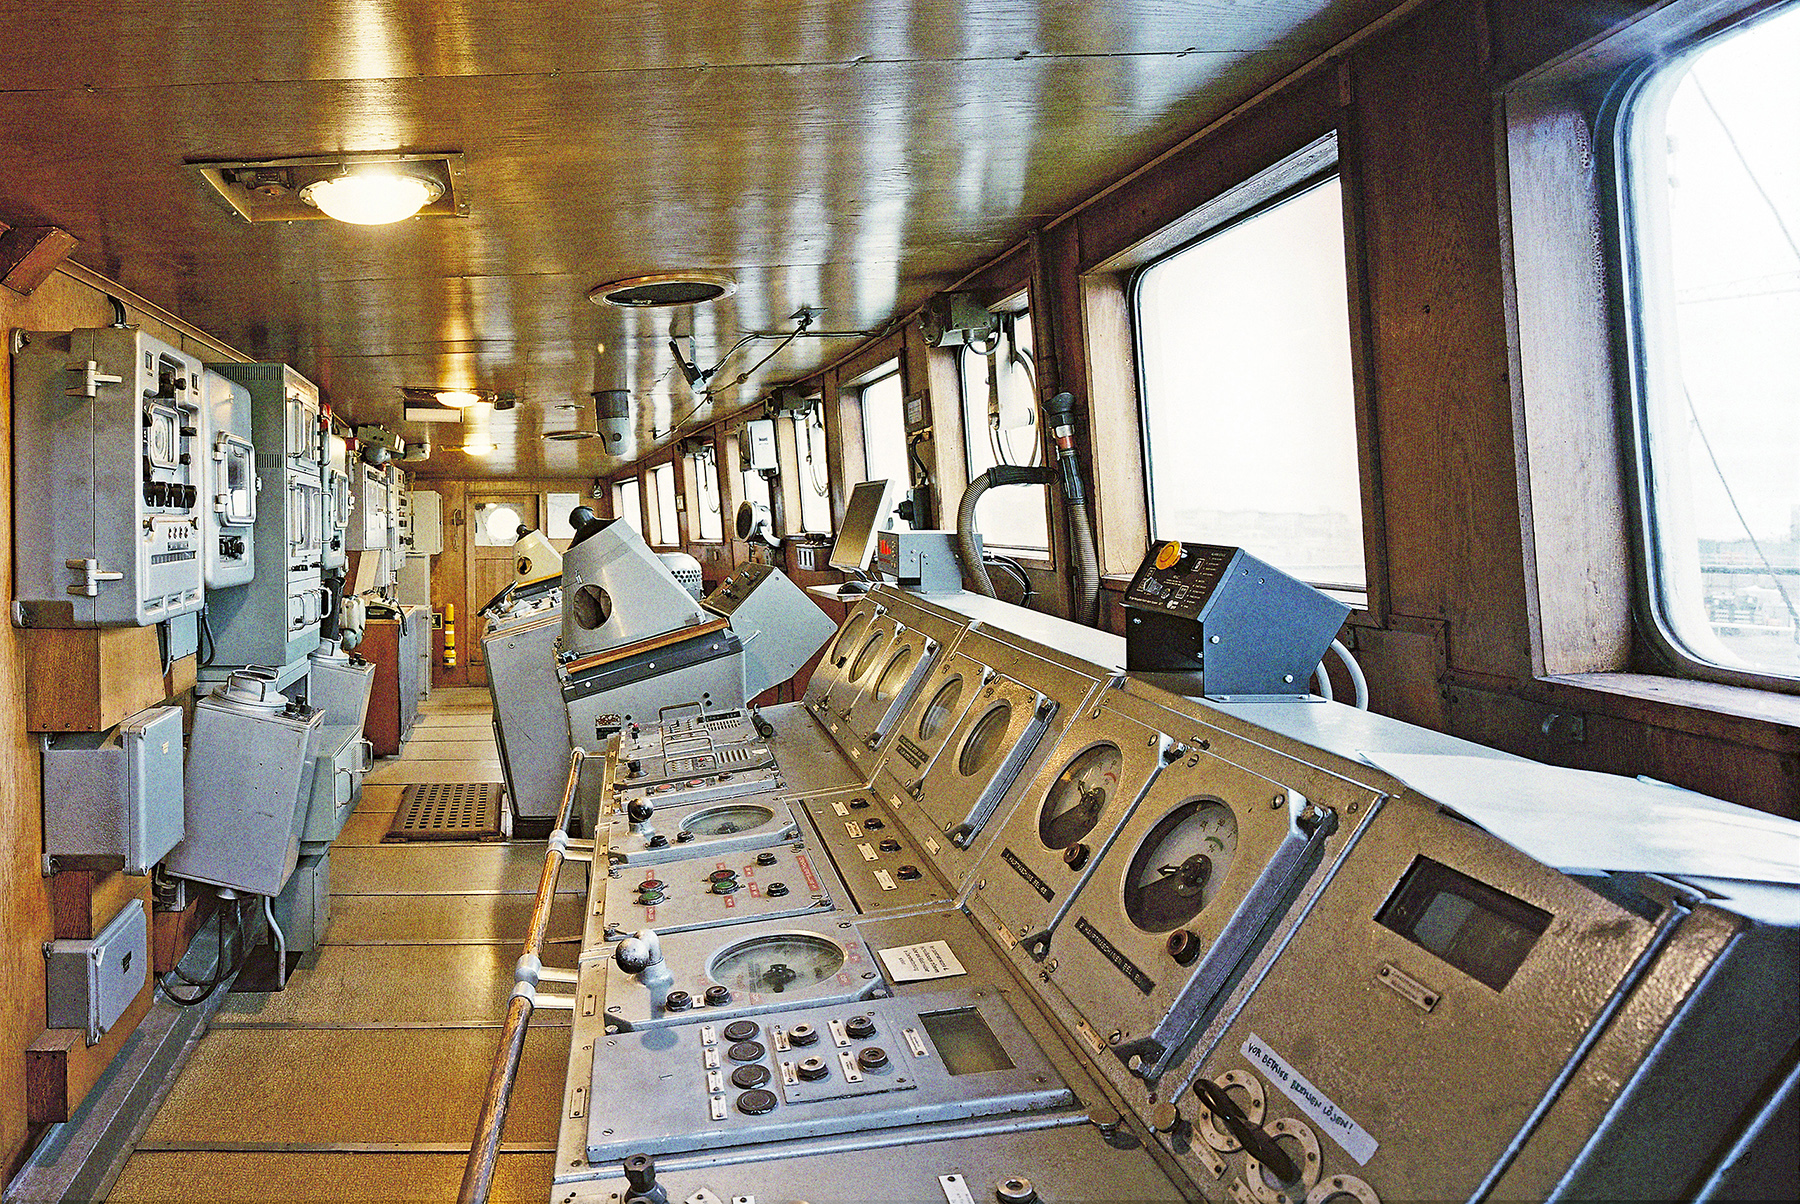 Die Brücke der Stubnitz von der Seite fotografiert. Der Steuerraum des Schiffes mit vielen technischen Geräten und Fenstern auf der rechten Seite des Fotos.